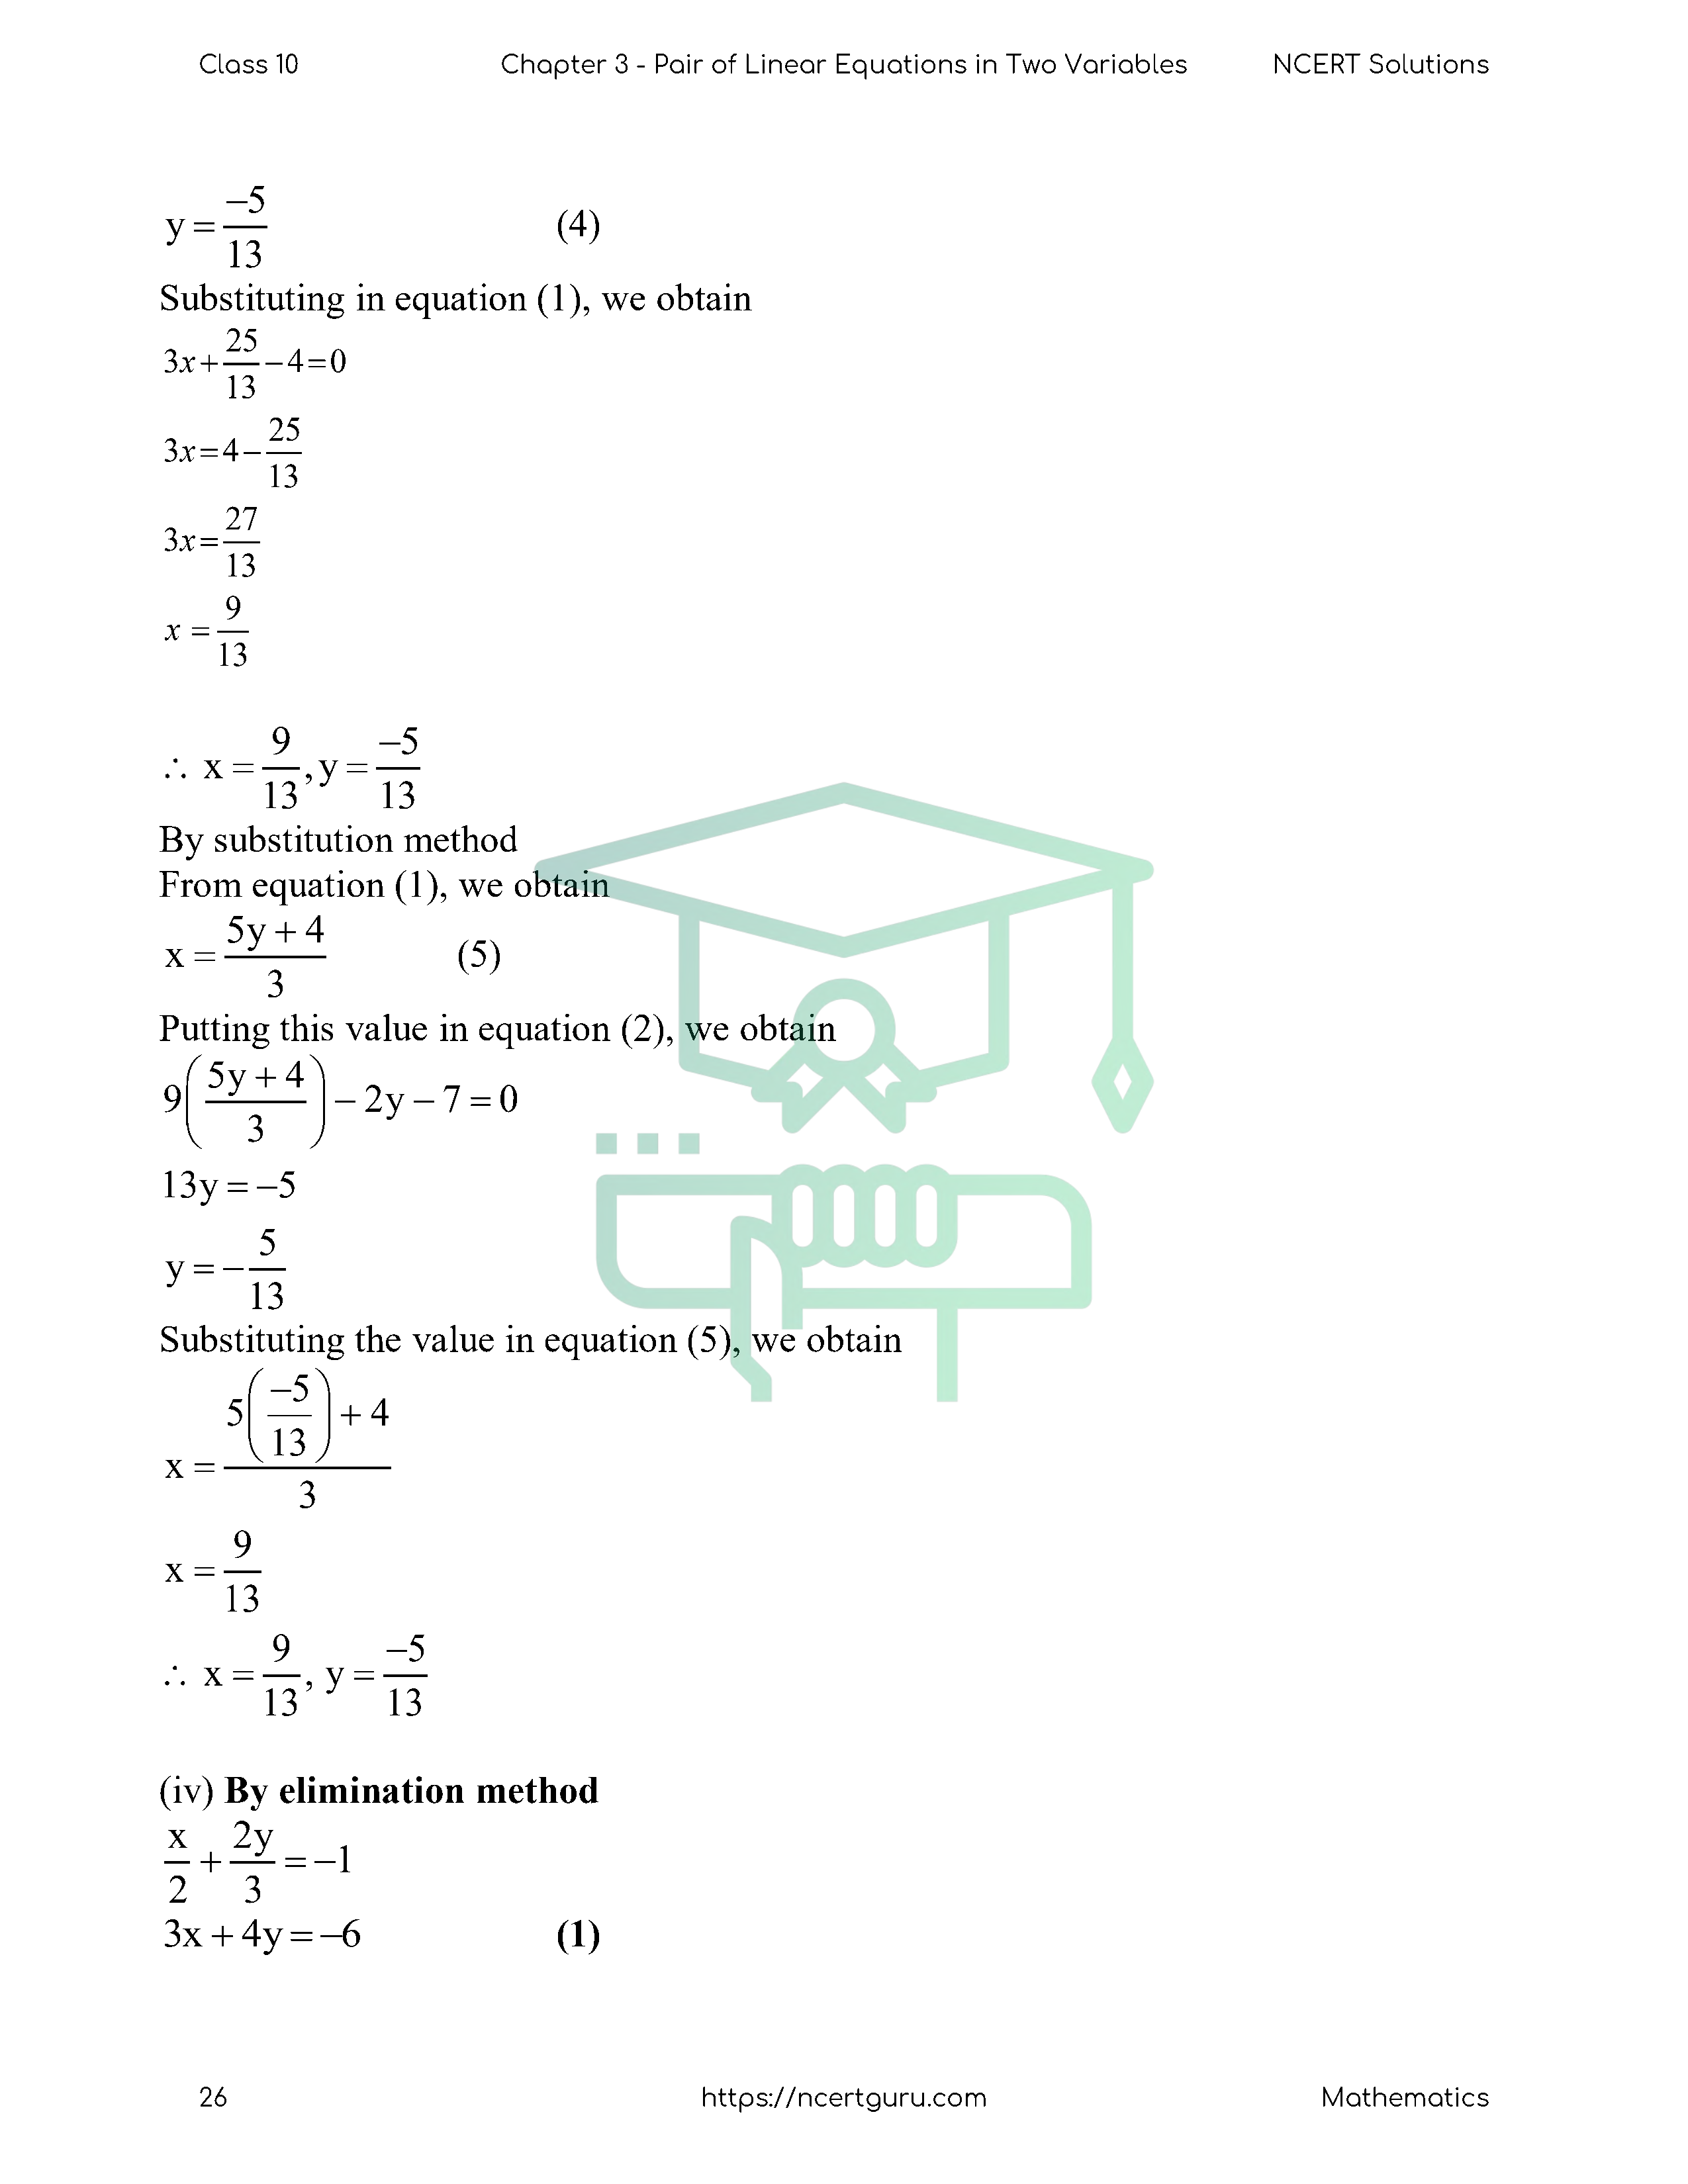 NCERT Solutions for Class 10 Maths Chapter 3